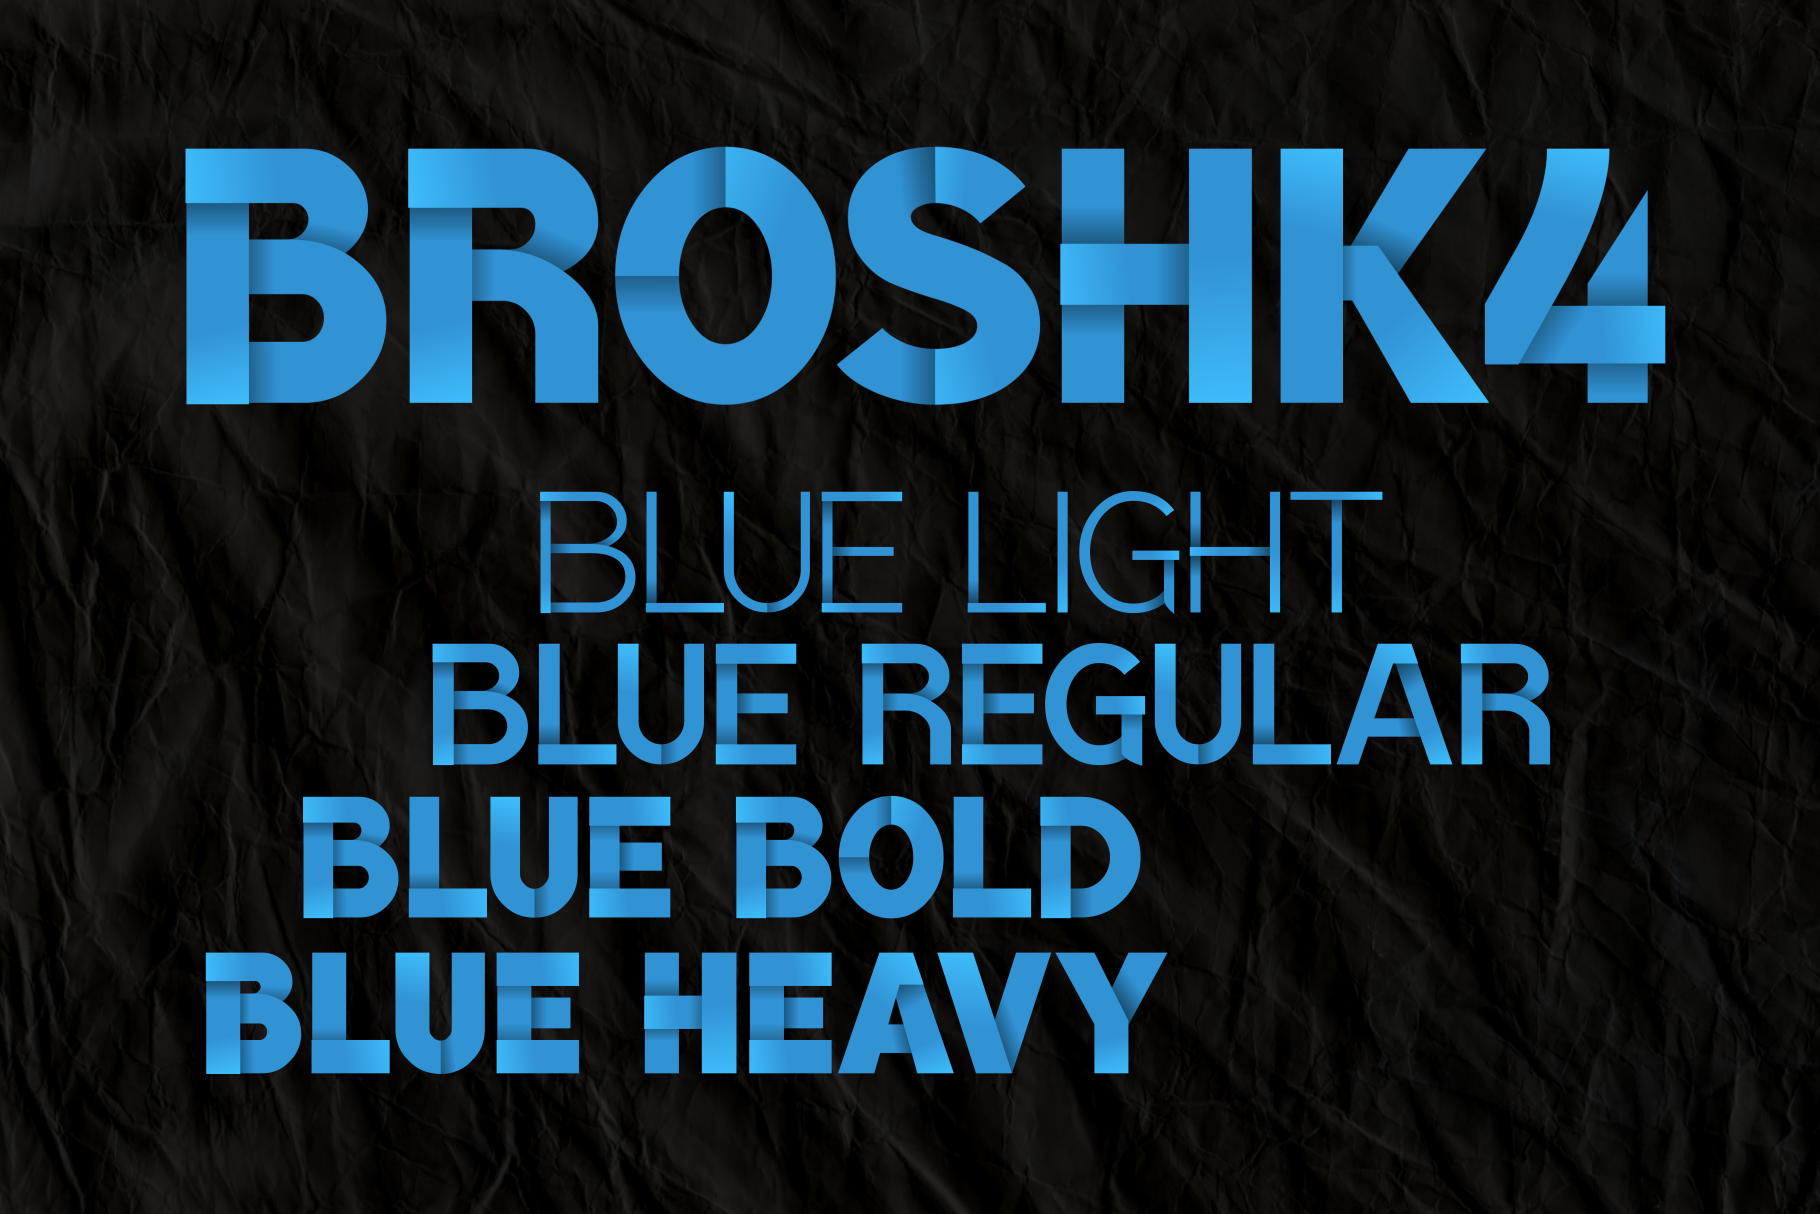 BroshK4Blue